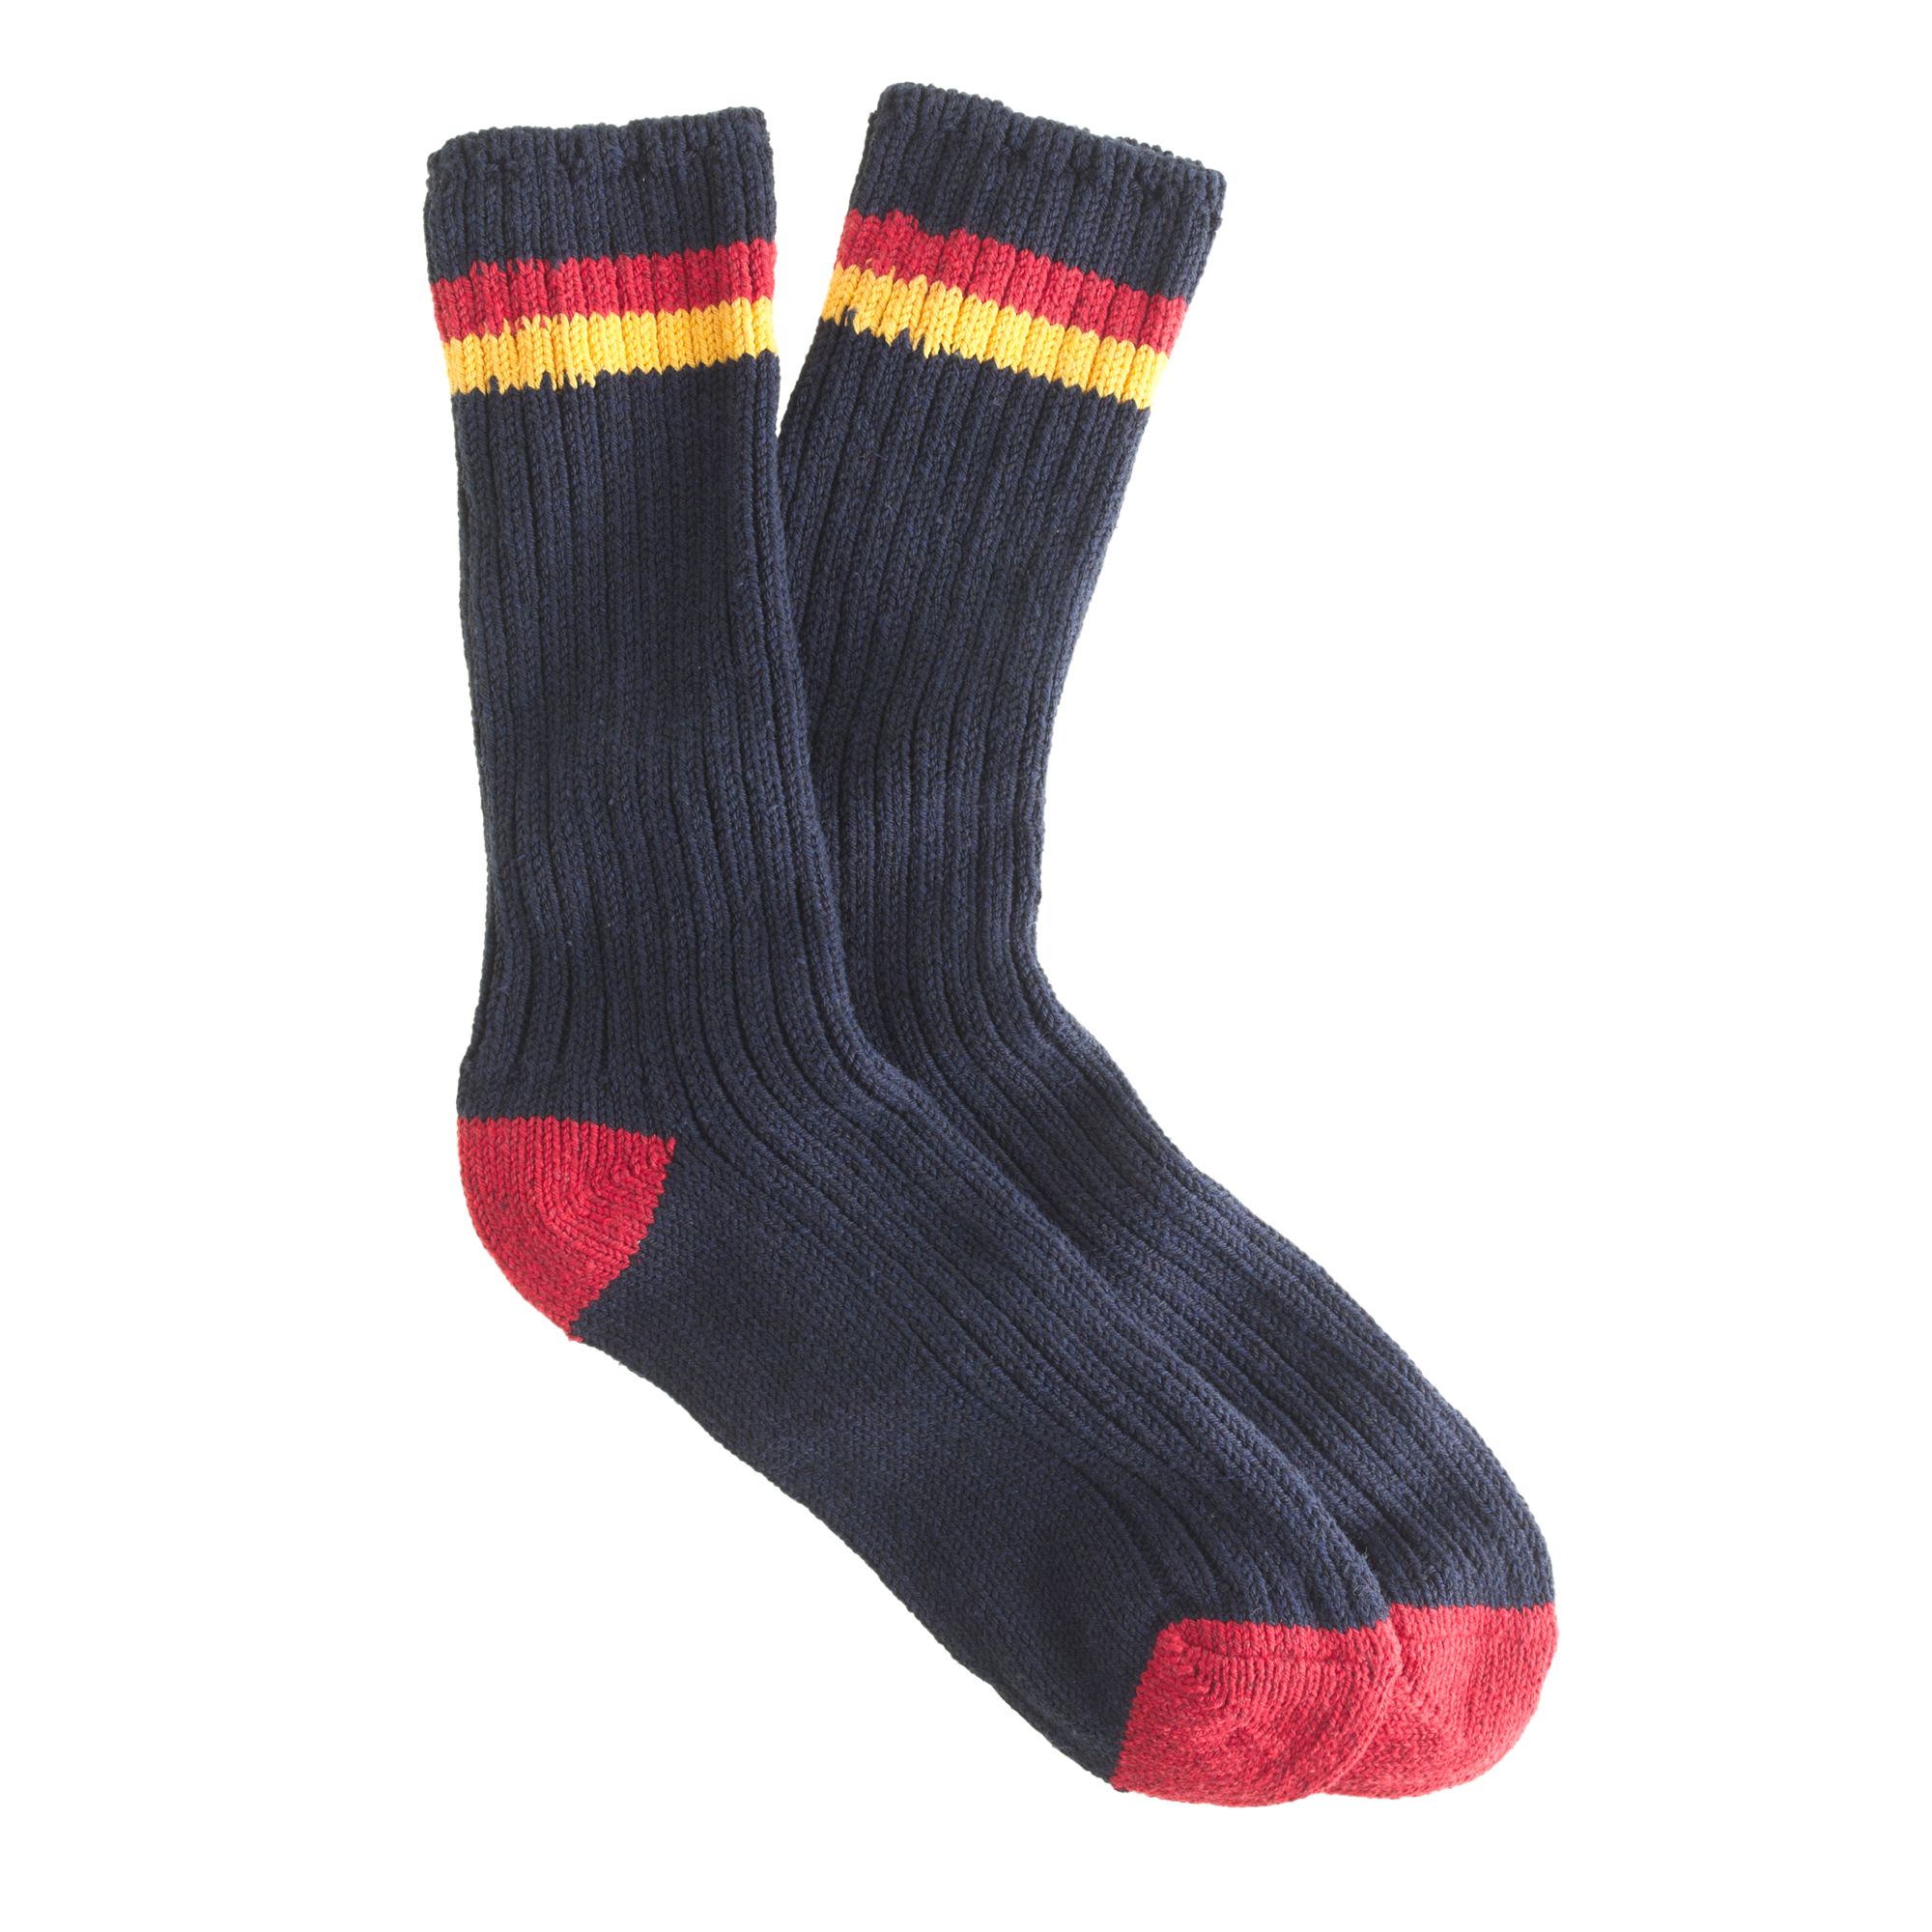 J.crew Men's Camp Socks for Men | Lyst